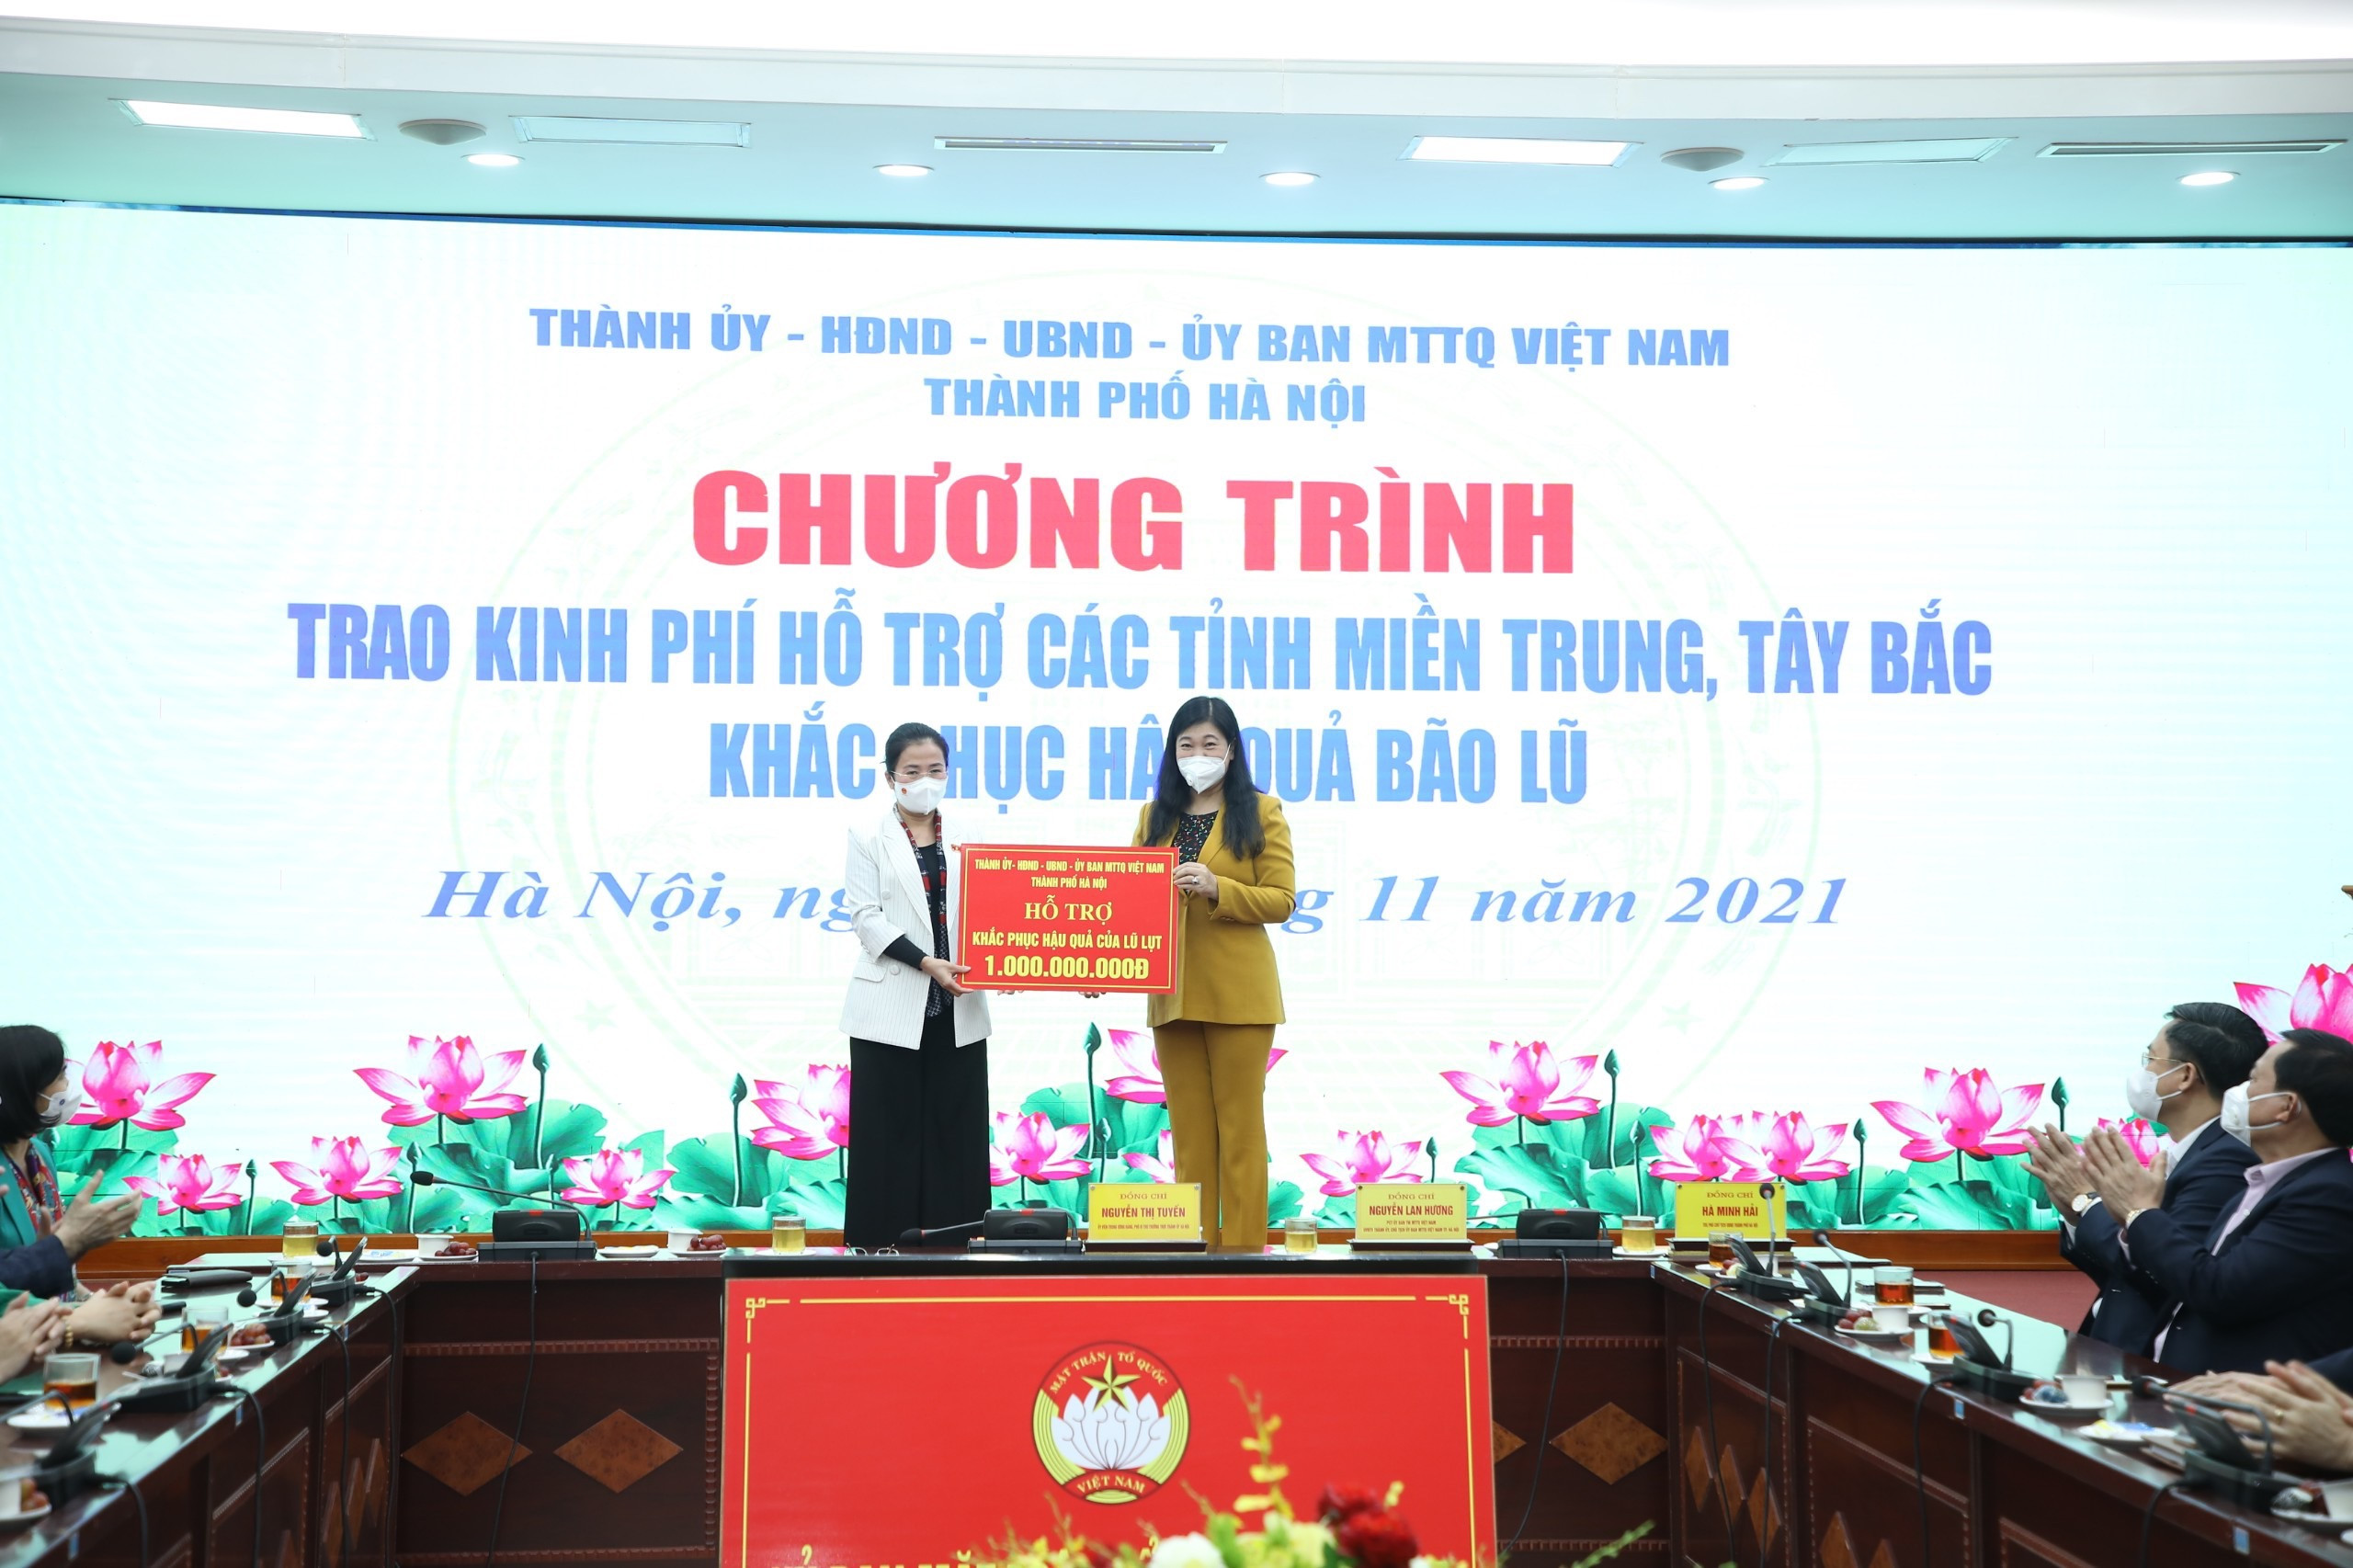 Đồng chí Võ Thị Minh Sinh nhận 1 tỷ đồng hỗ trợ khắc phục hậu quả bão lũ. Ảnh Phan Hậu